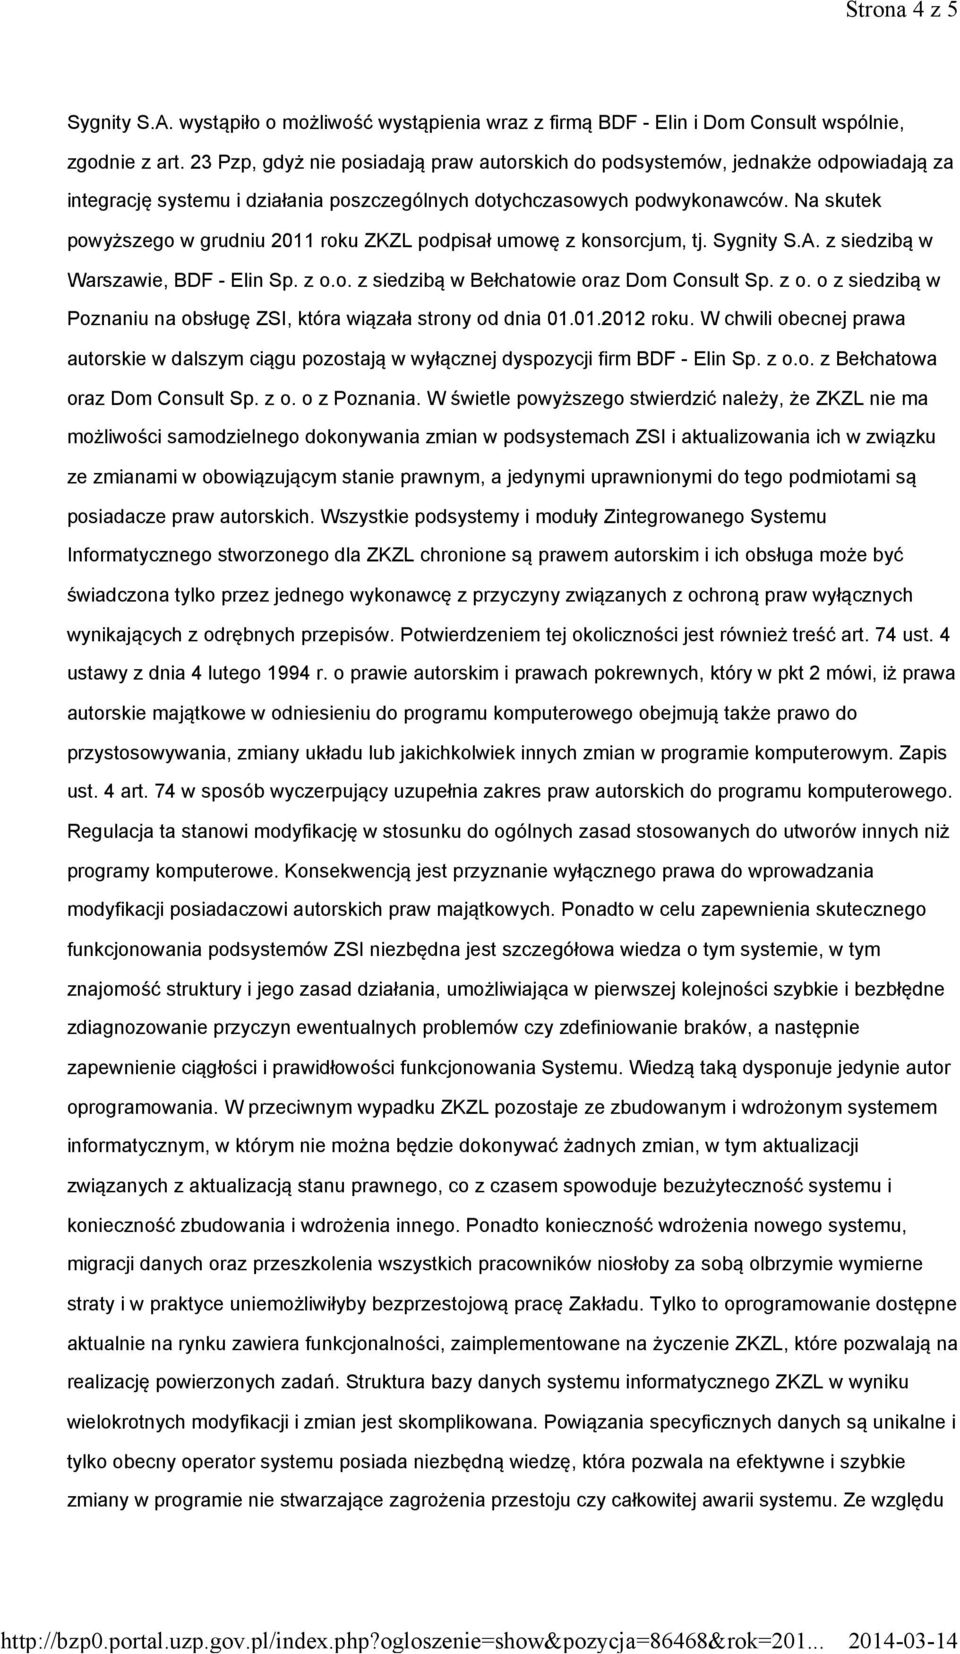 Na skutek powyższego w grudniu 2011 roku ZKZL podpisał umowę z konsorcjum, tj. Sygnity S.A. z siedzibą w Warszawie, BDF - Elin Sp. z o.